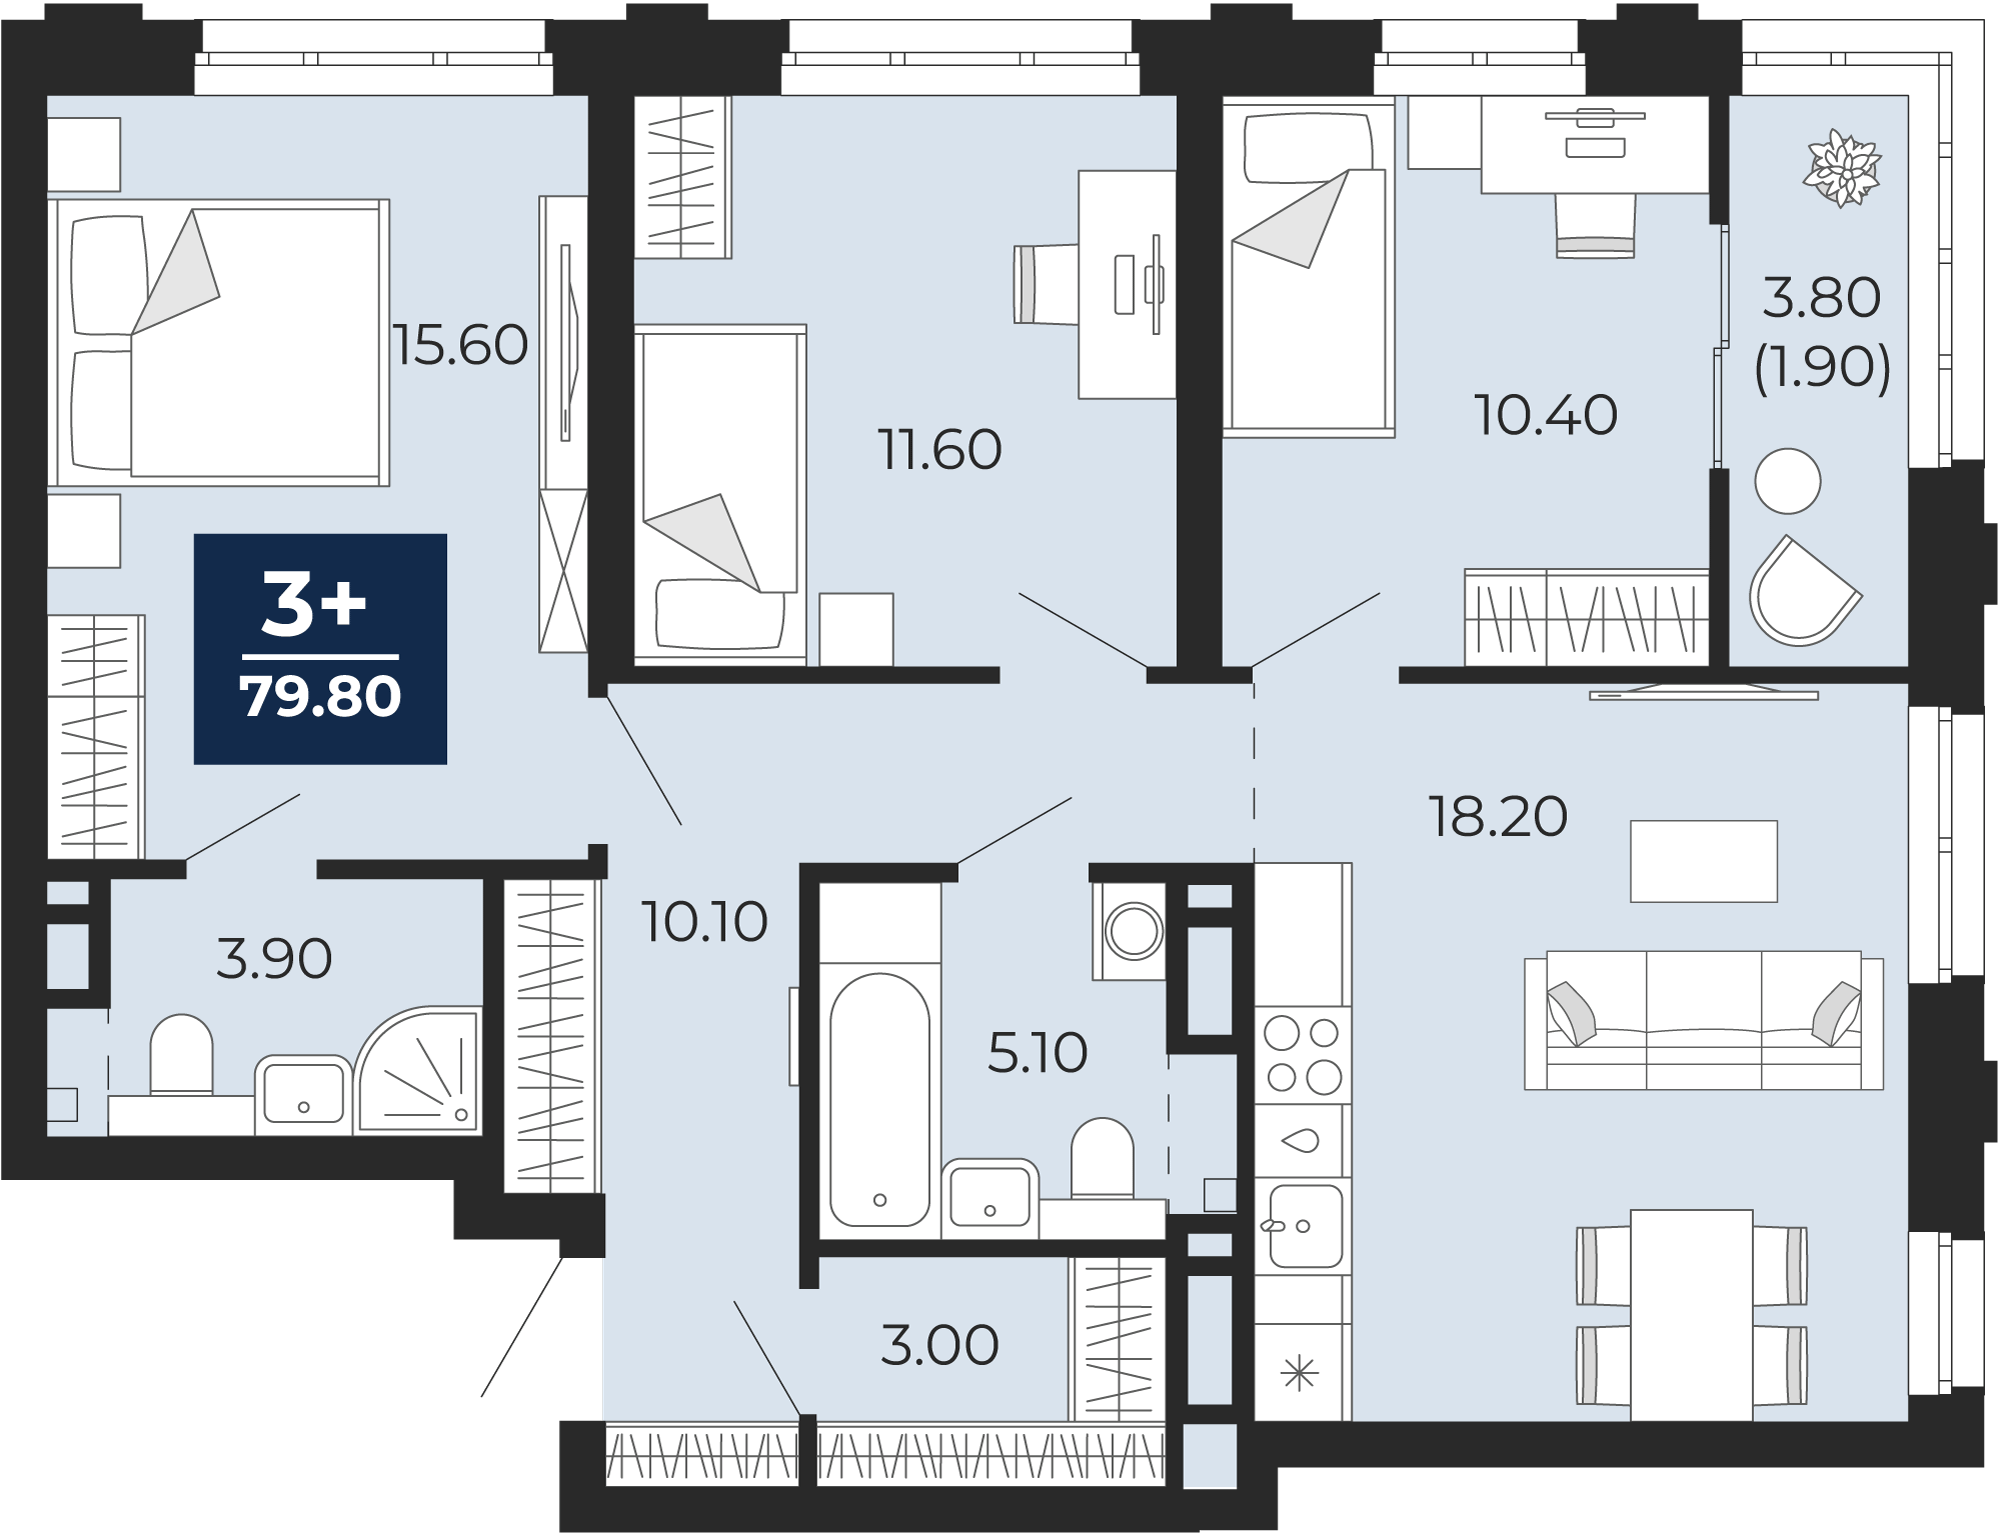 Квартира № 301, 3-комнатная, 79.8 кв. м, 9 этаж